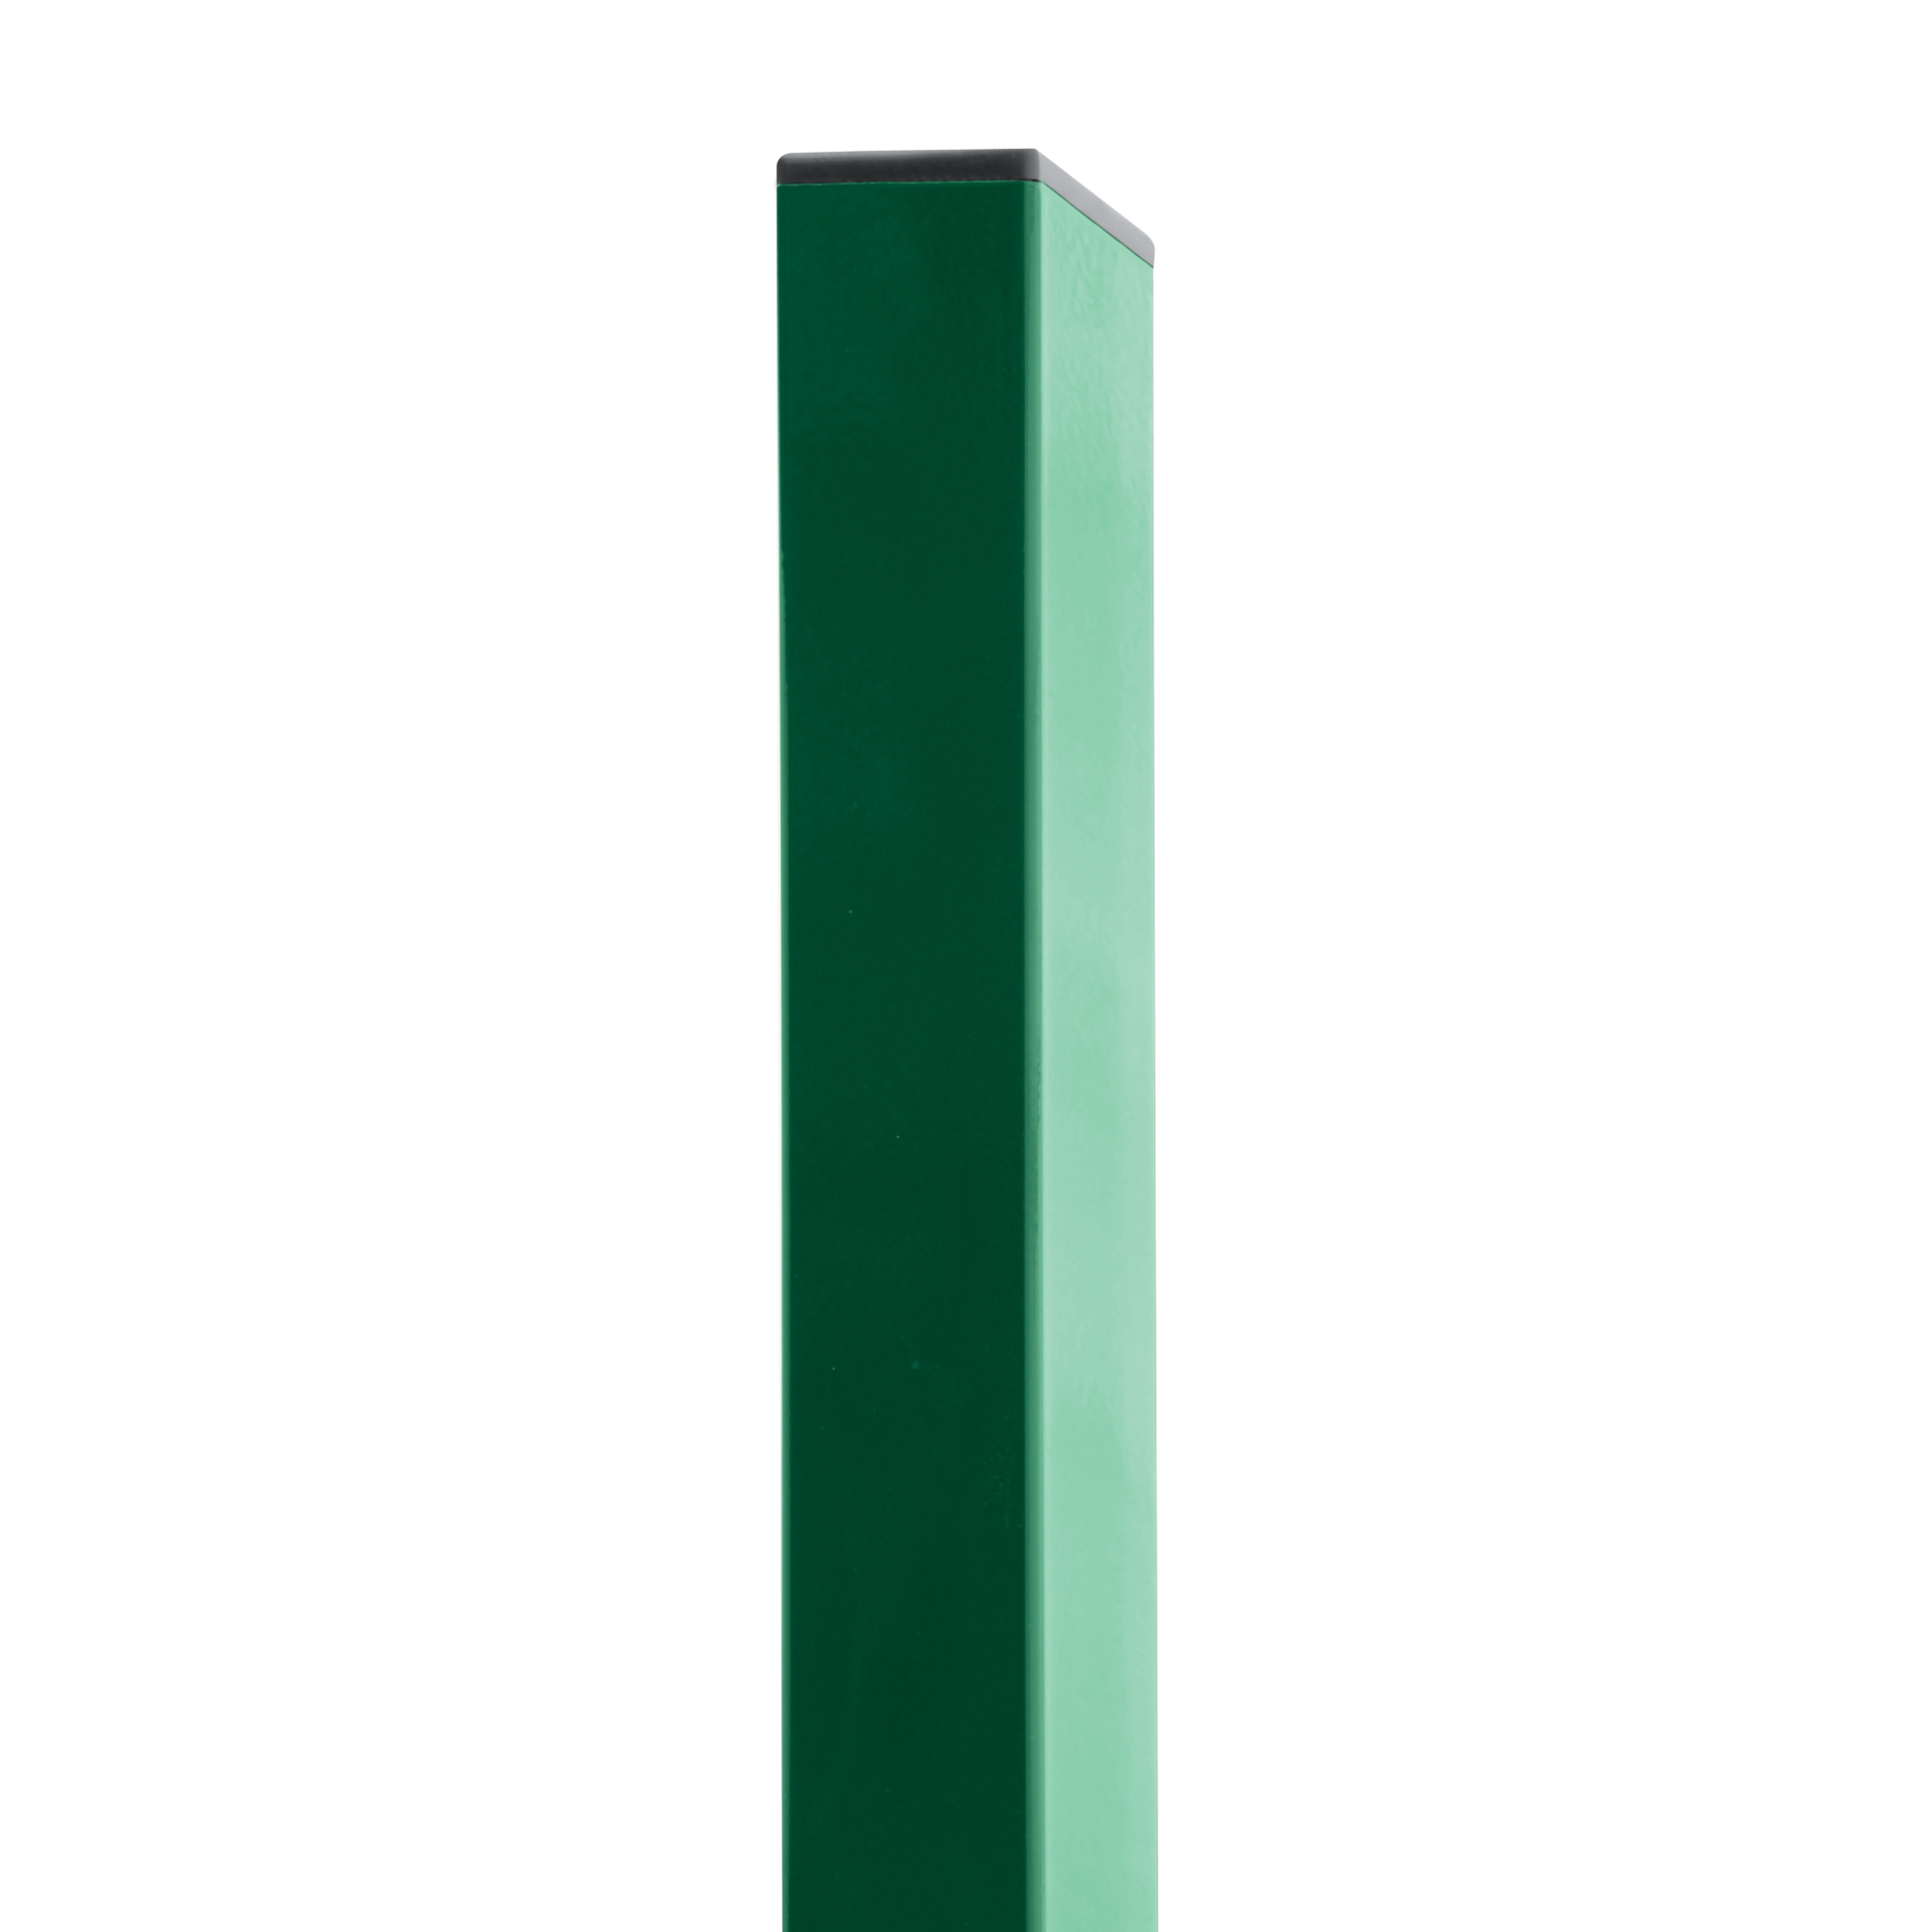 Sloupek čtyřhranný PilodelZn + PVC zelený průměr 60×40 mm výška 2